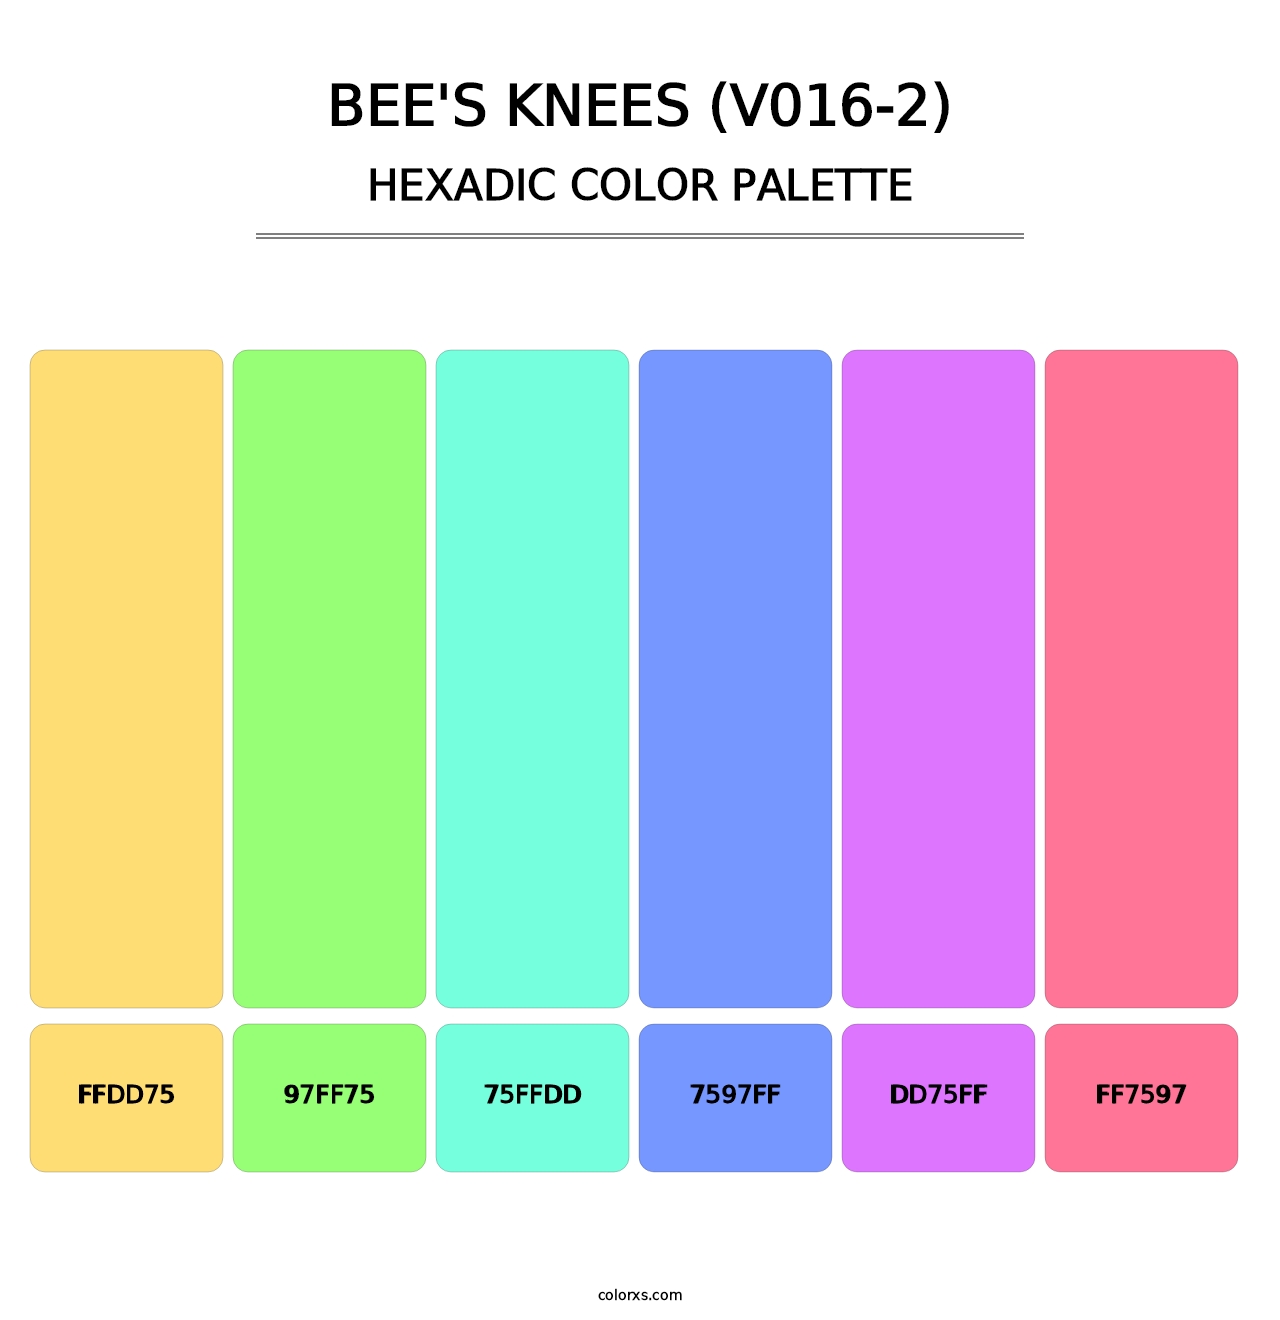 Bee's Knees (V016-2) - Hexadic Color Palette